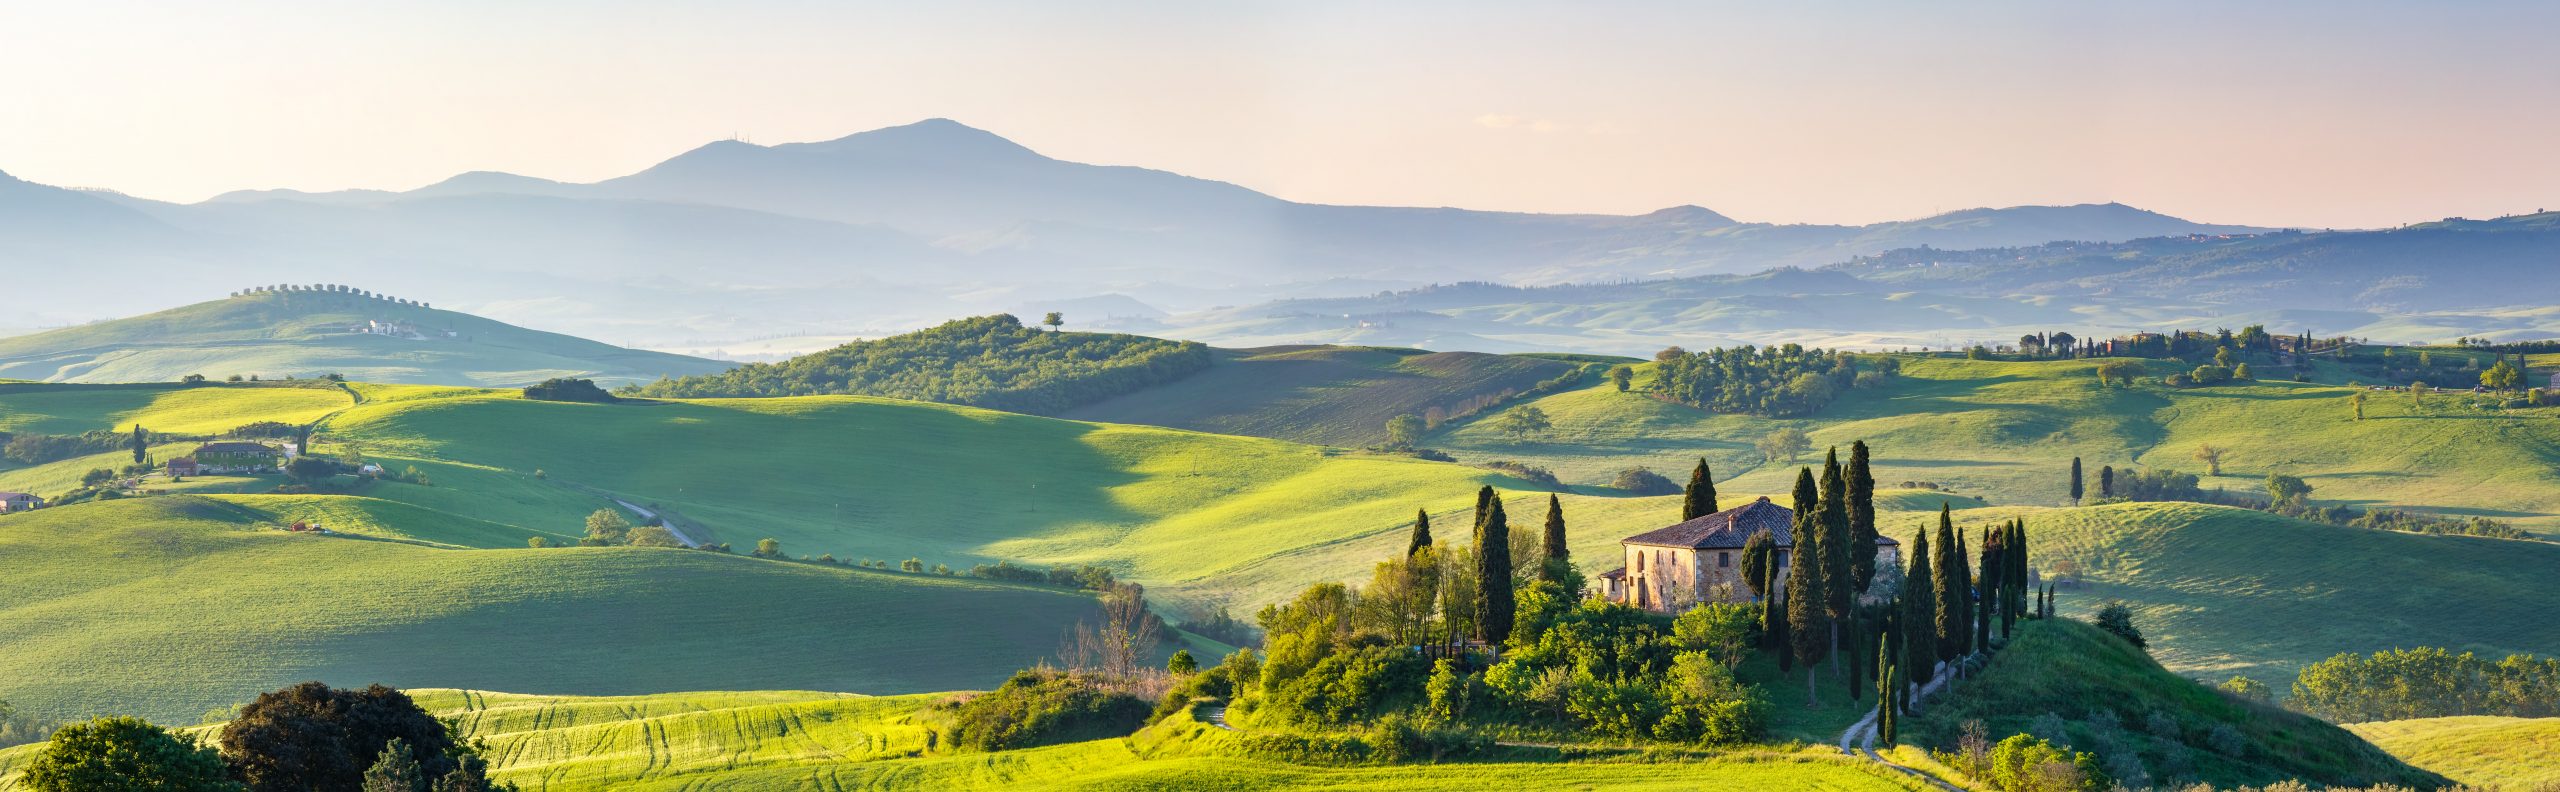 Beauty of Tuscany